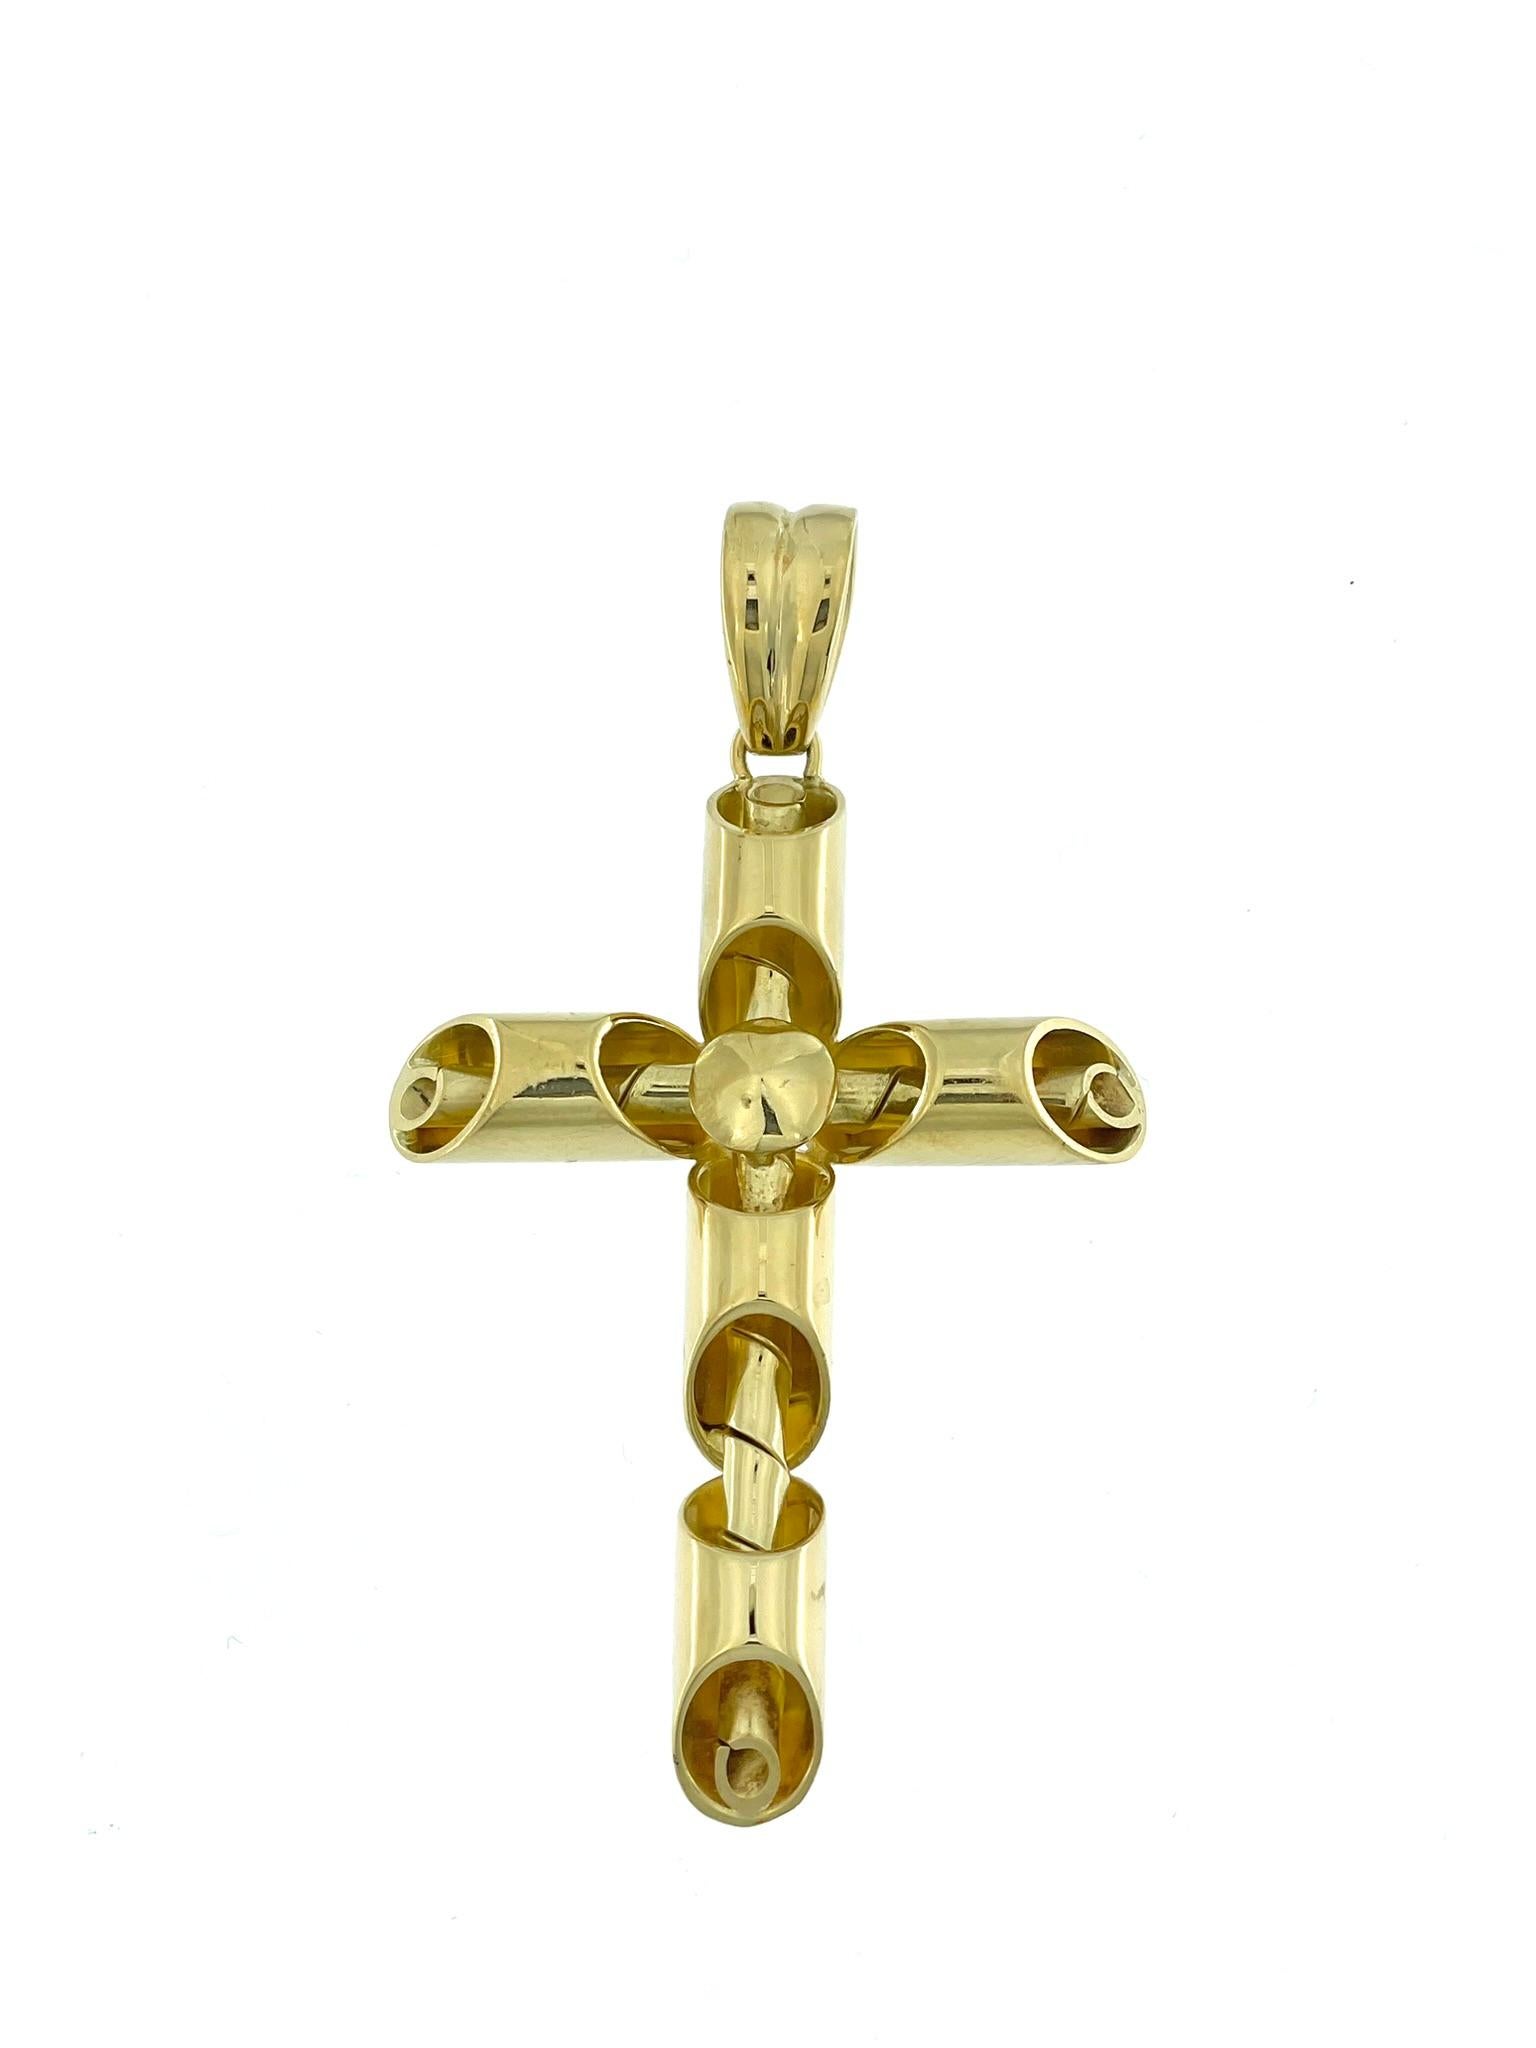 Das moderne italienische Kreuz ist eine zeitgenössische Interpretation eines zeitlosen Symbols, das mit außergewöhnlicher Kunstfertigkeit und Liebe zum Detail gefertigt wurde. Dieses Kreuz aus 18 Karat Gelbgold strahlt Eleganz und Raffinesse